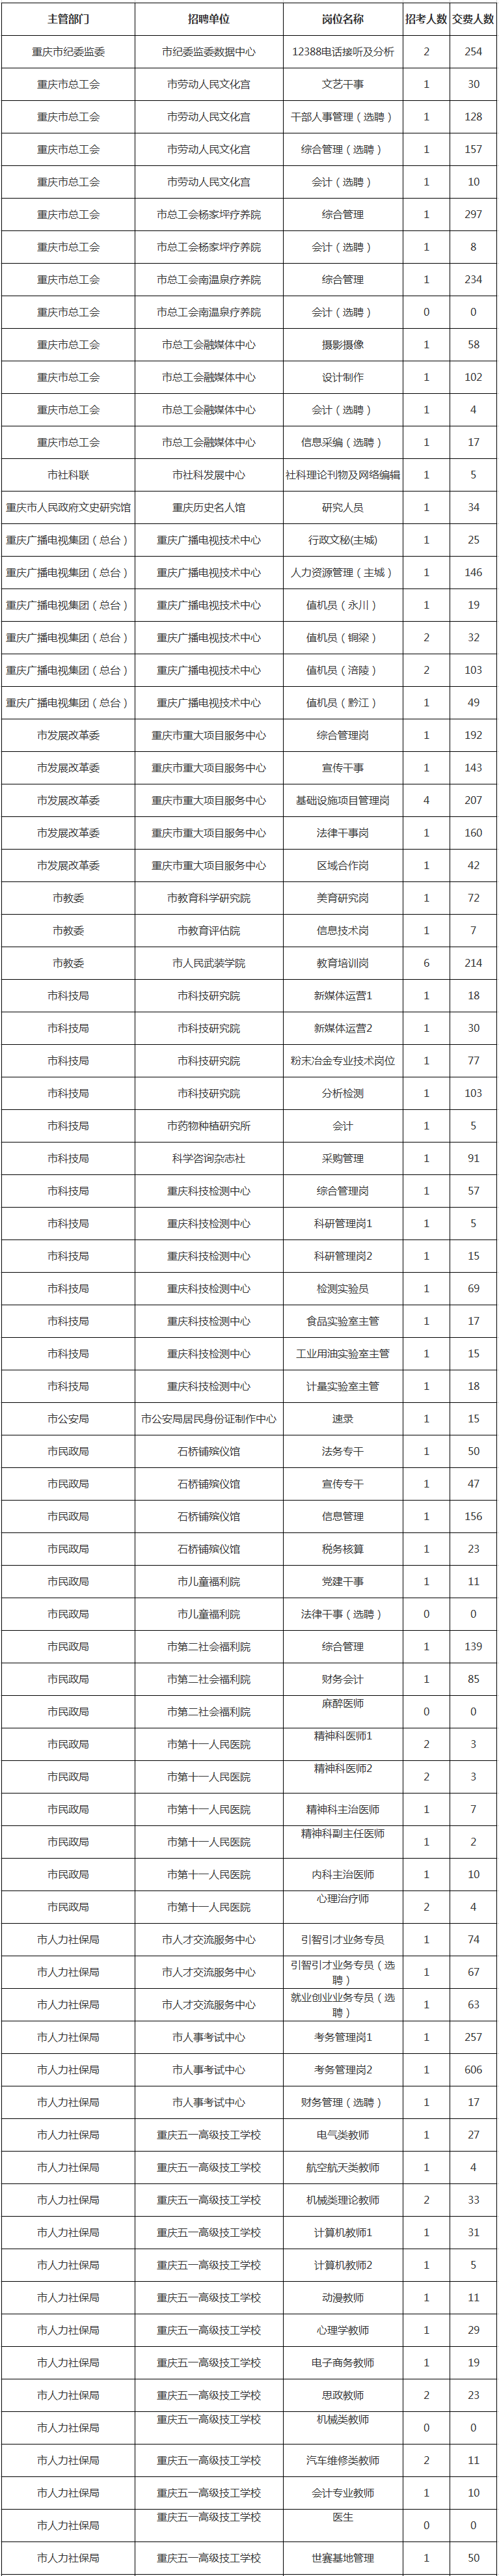 2020重庆市属事业单位最终报名统计